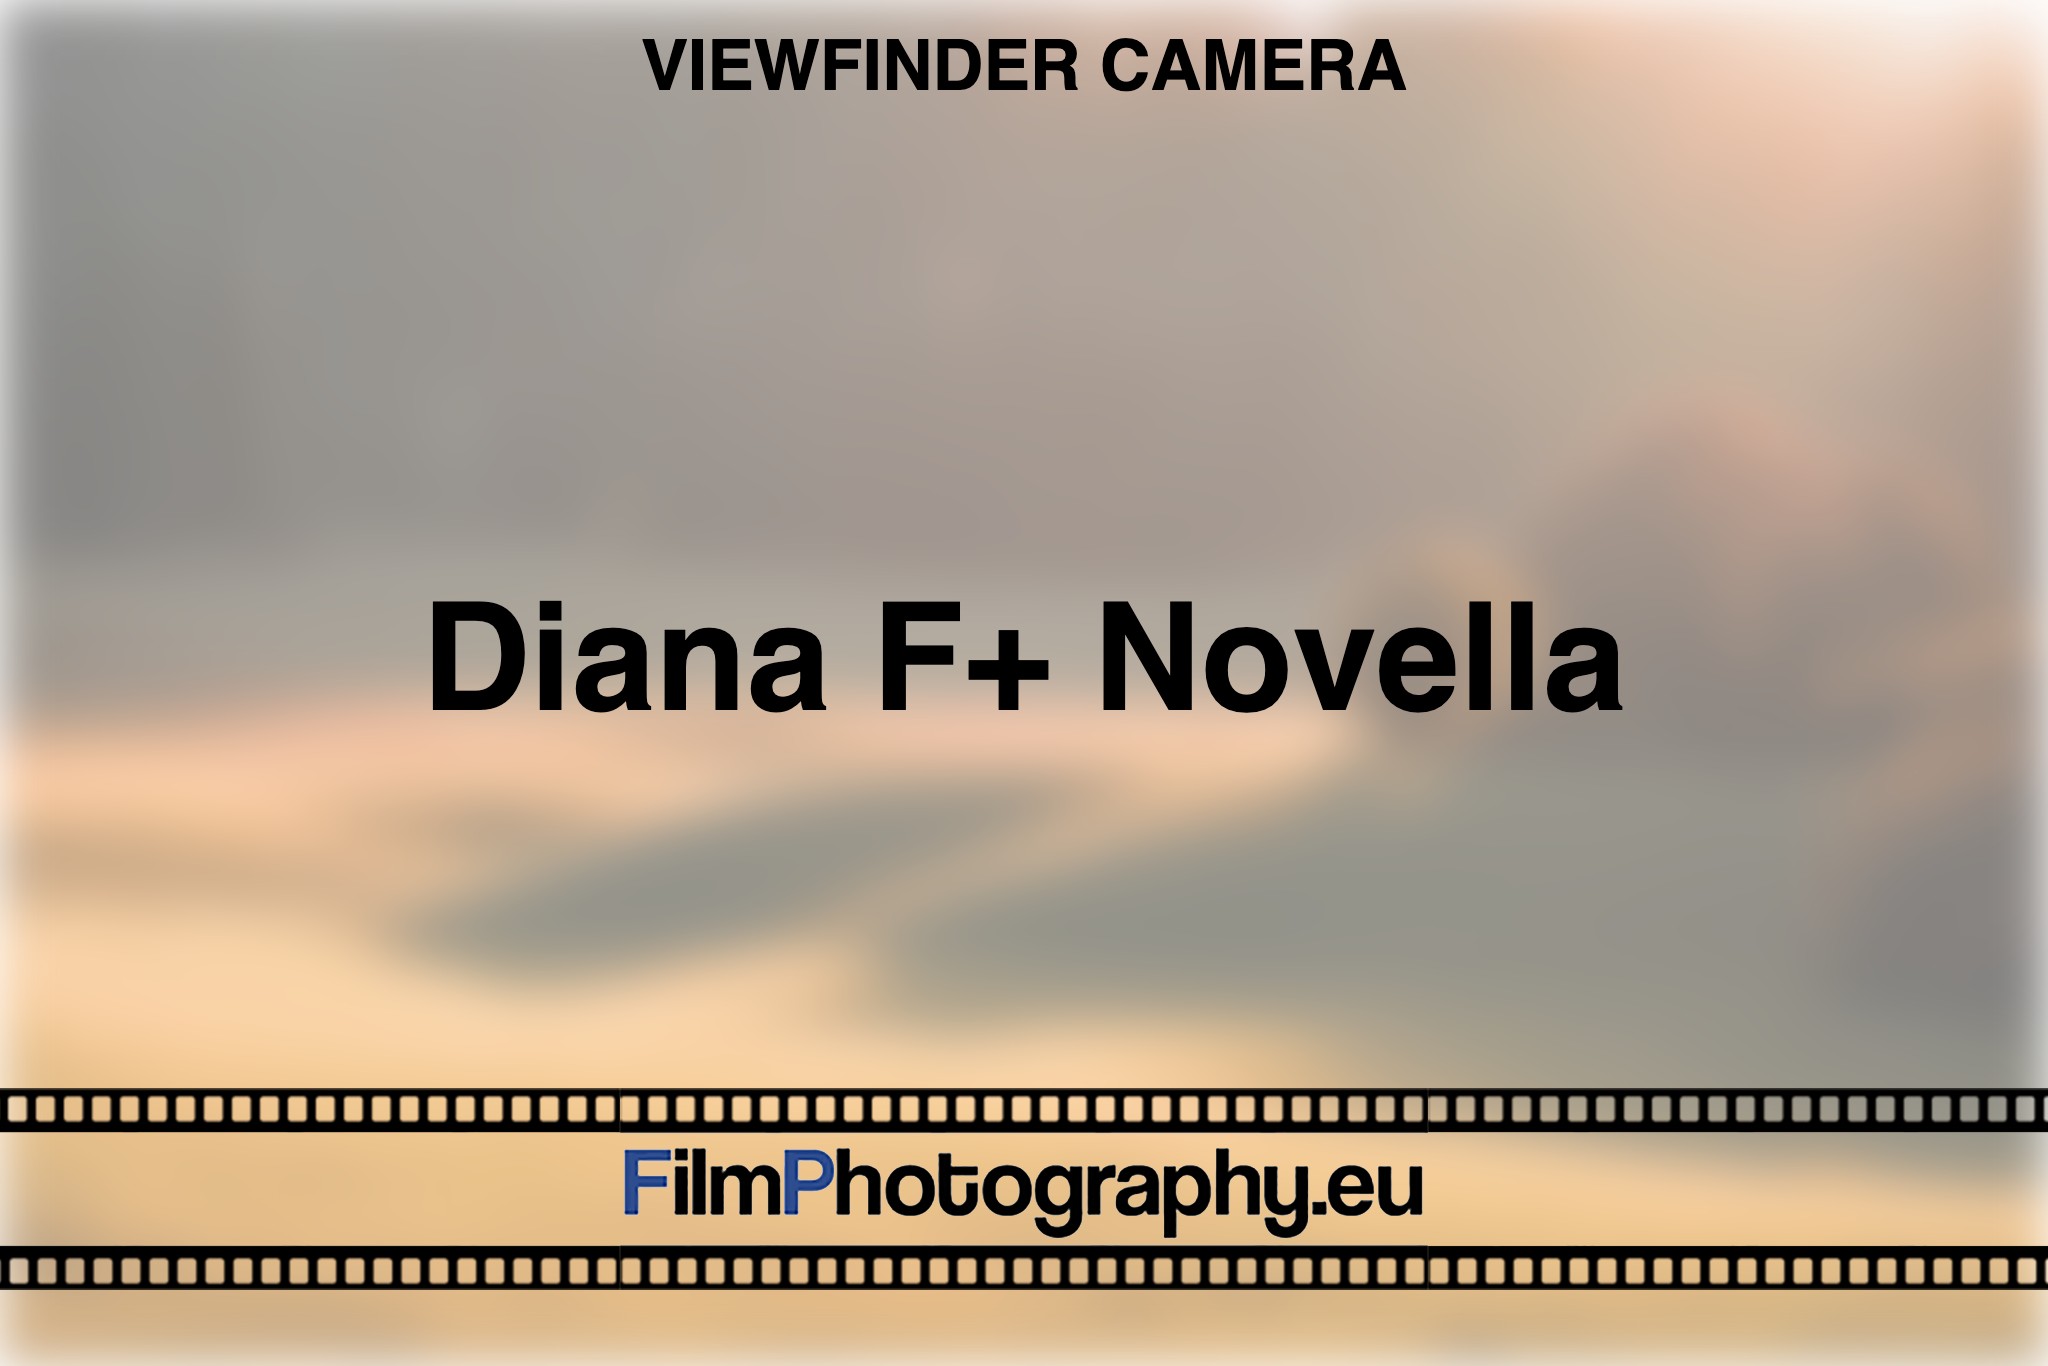 diana-f-novella-viewfinder-camera-bnv